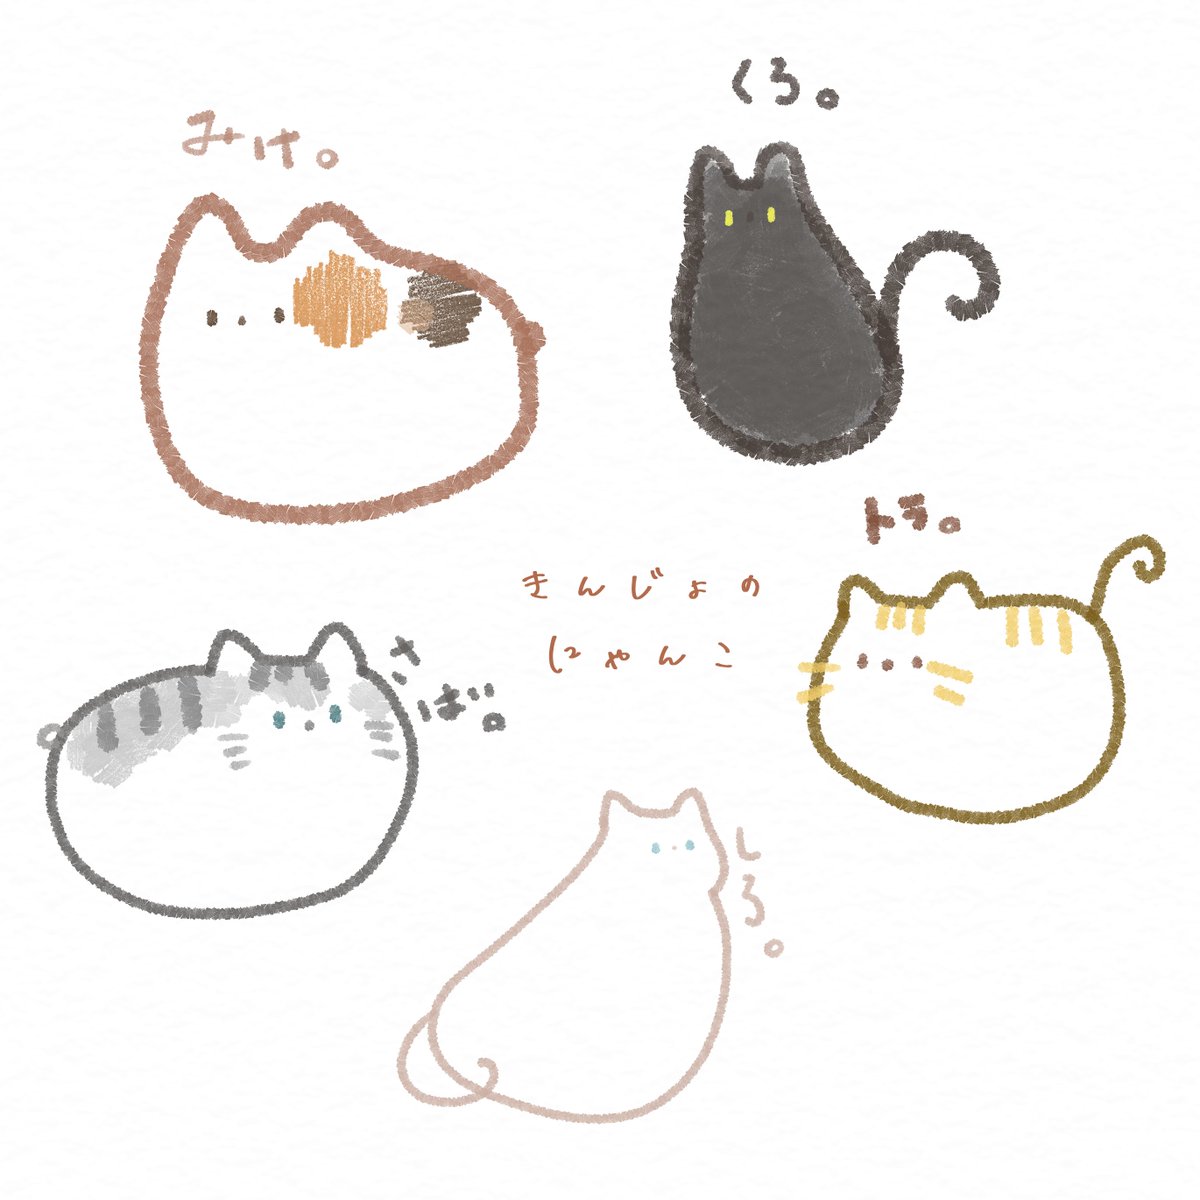 最近見かける、近所の猫さんたちを描いてみました。可愛いです(*'▽`*)

#イラスト 
#ねこ 